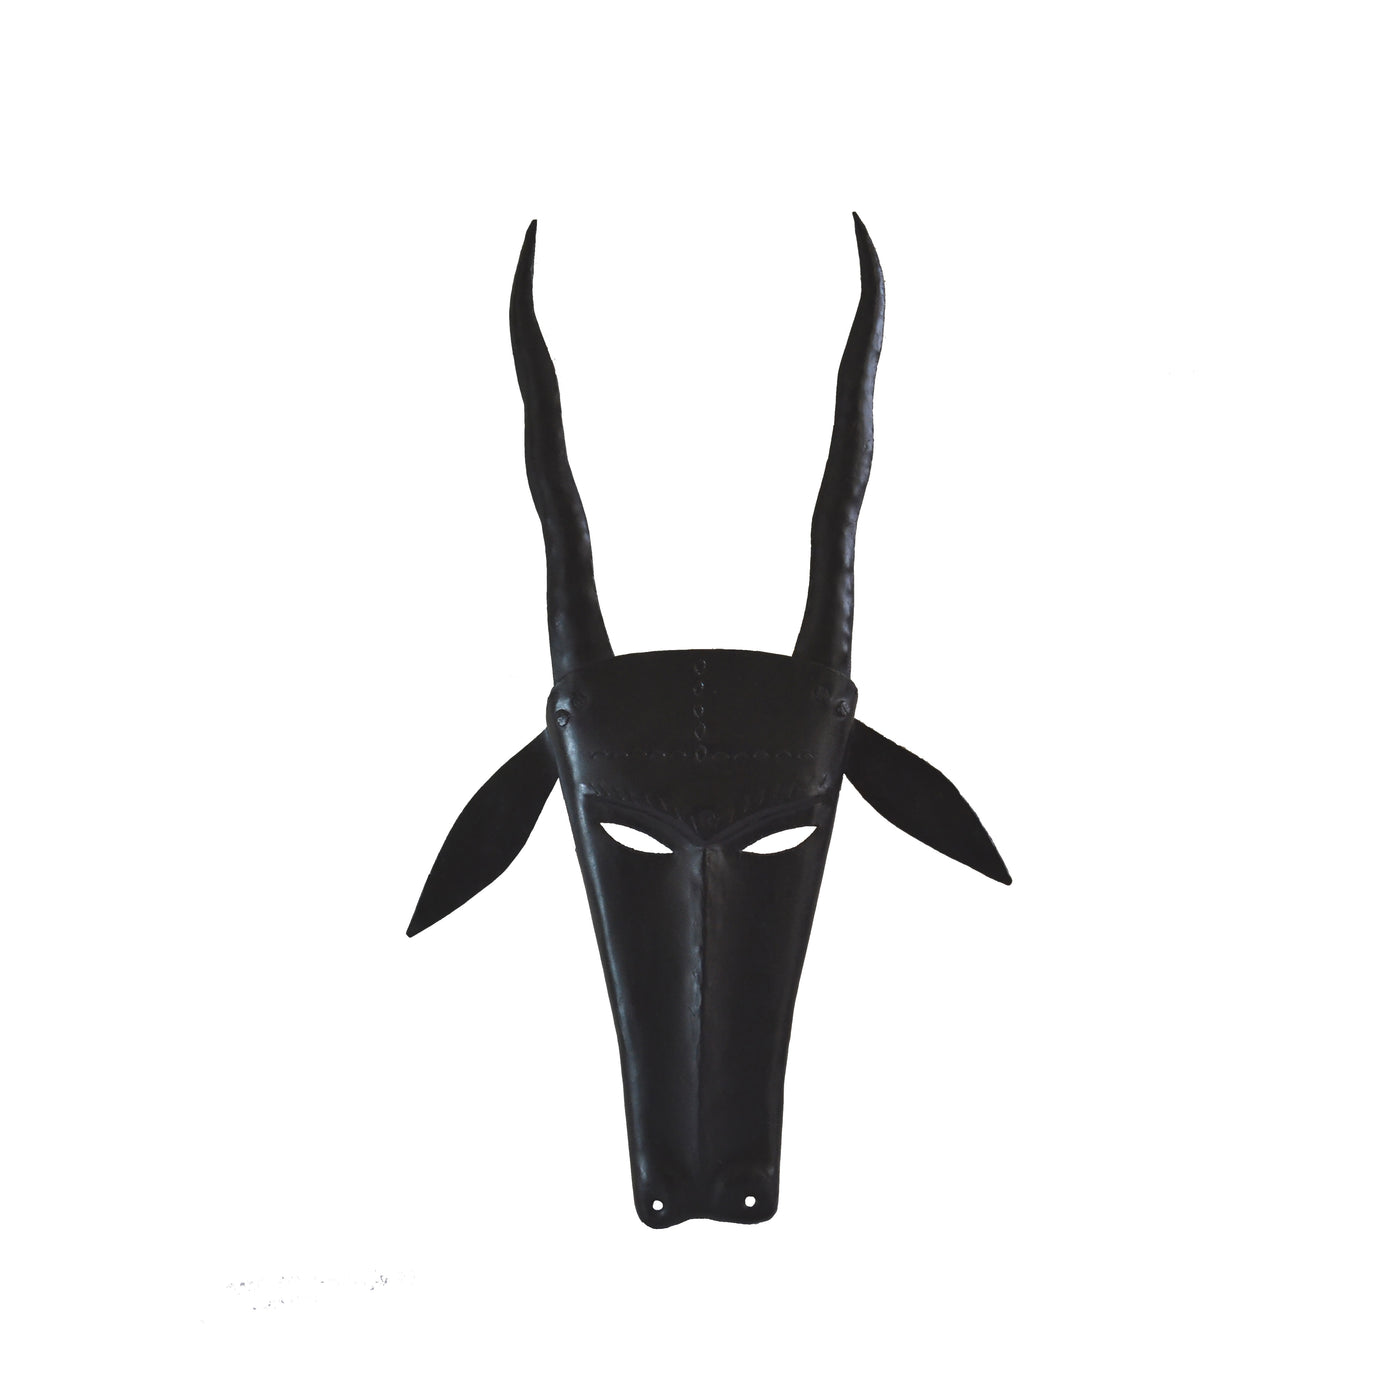 Chinhhari arts Wrought Iron  deer mask - Chinhhari Arts store